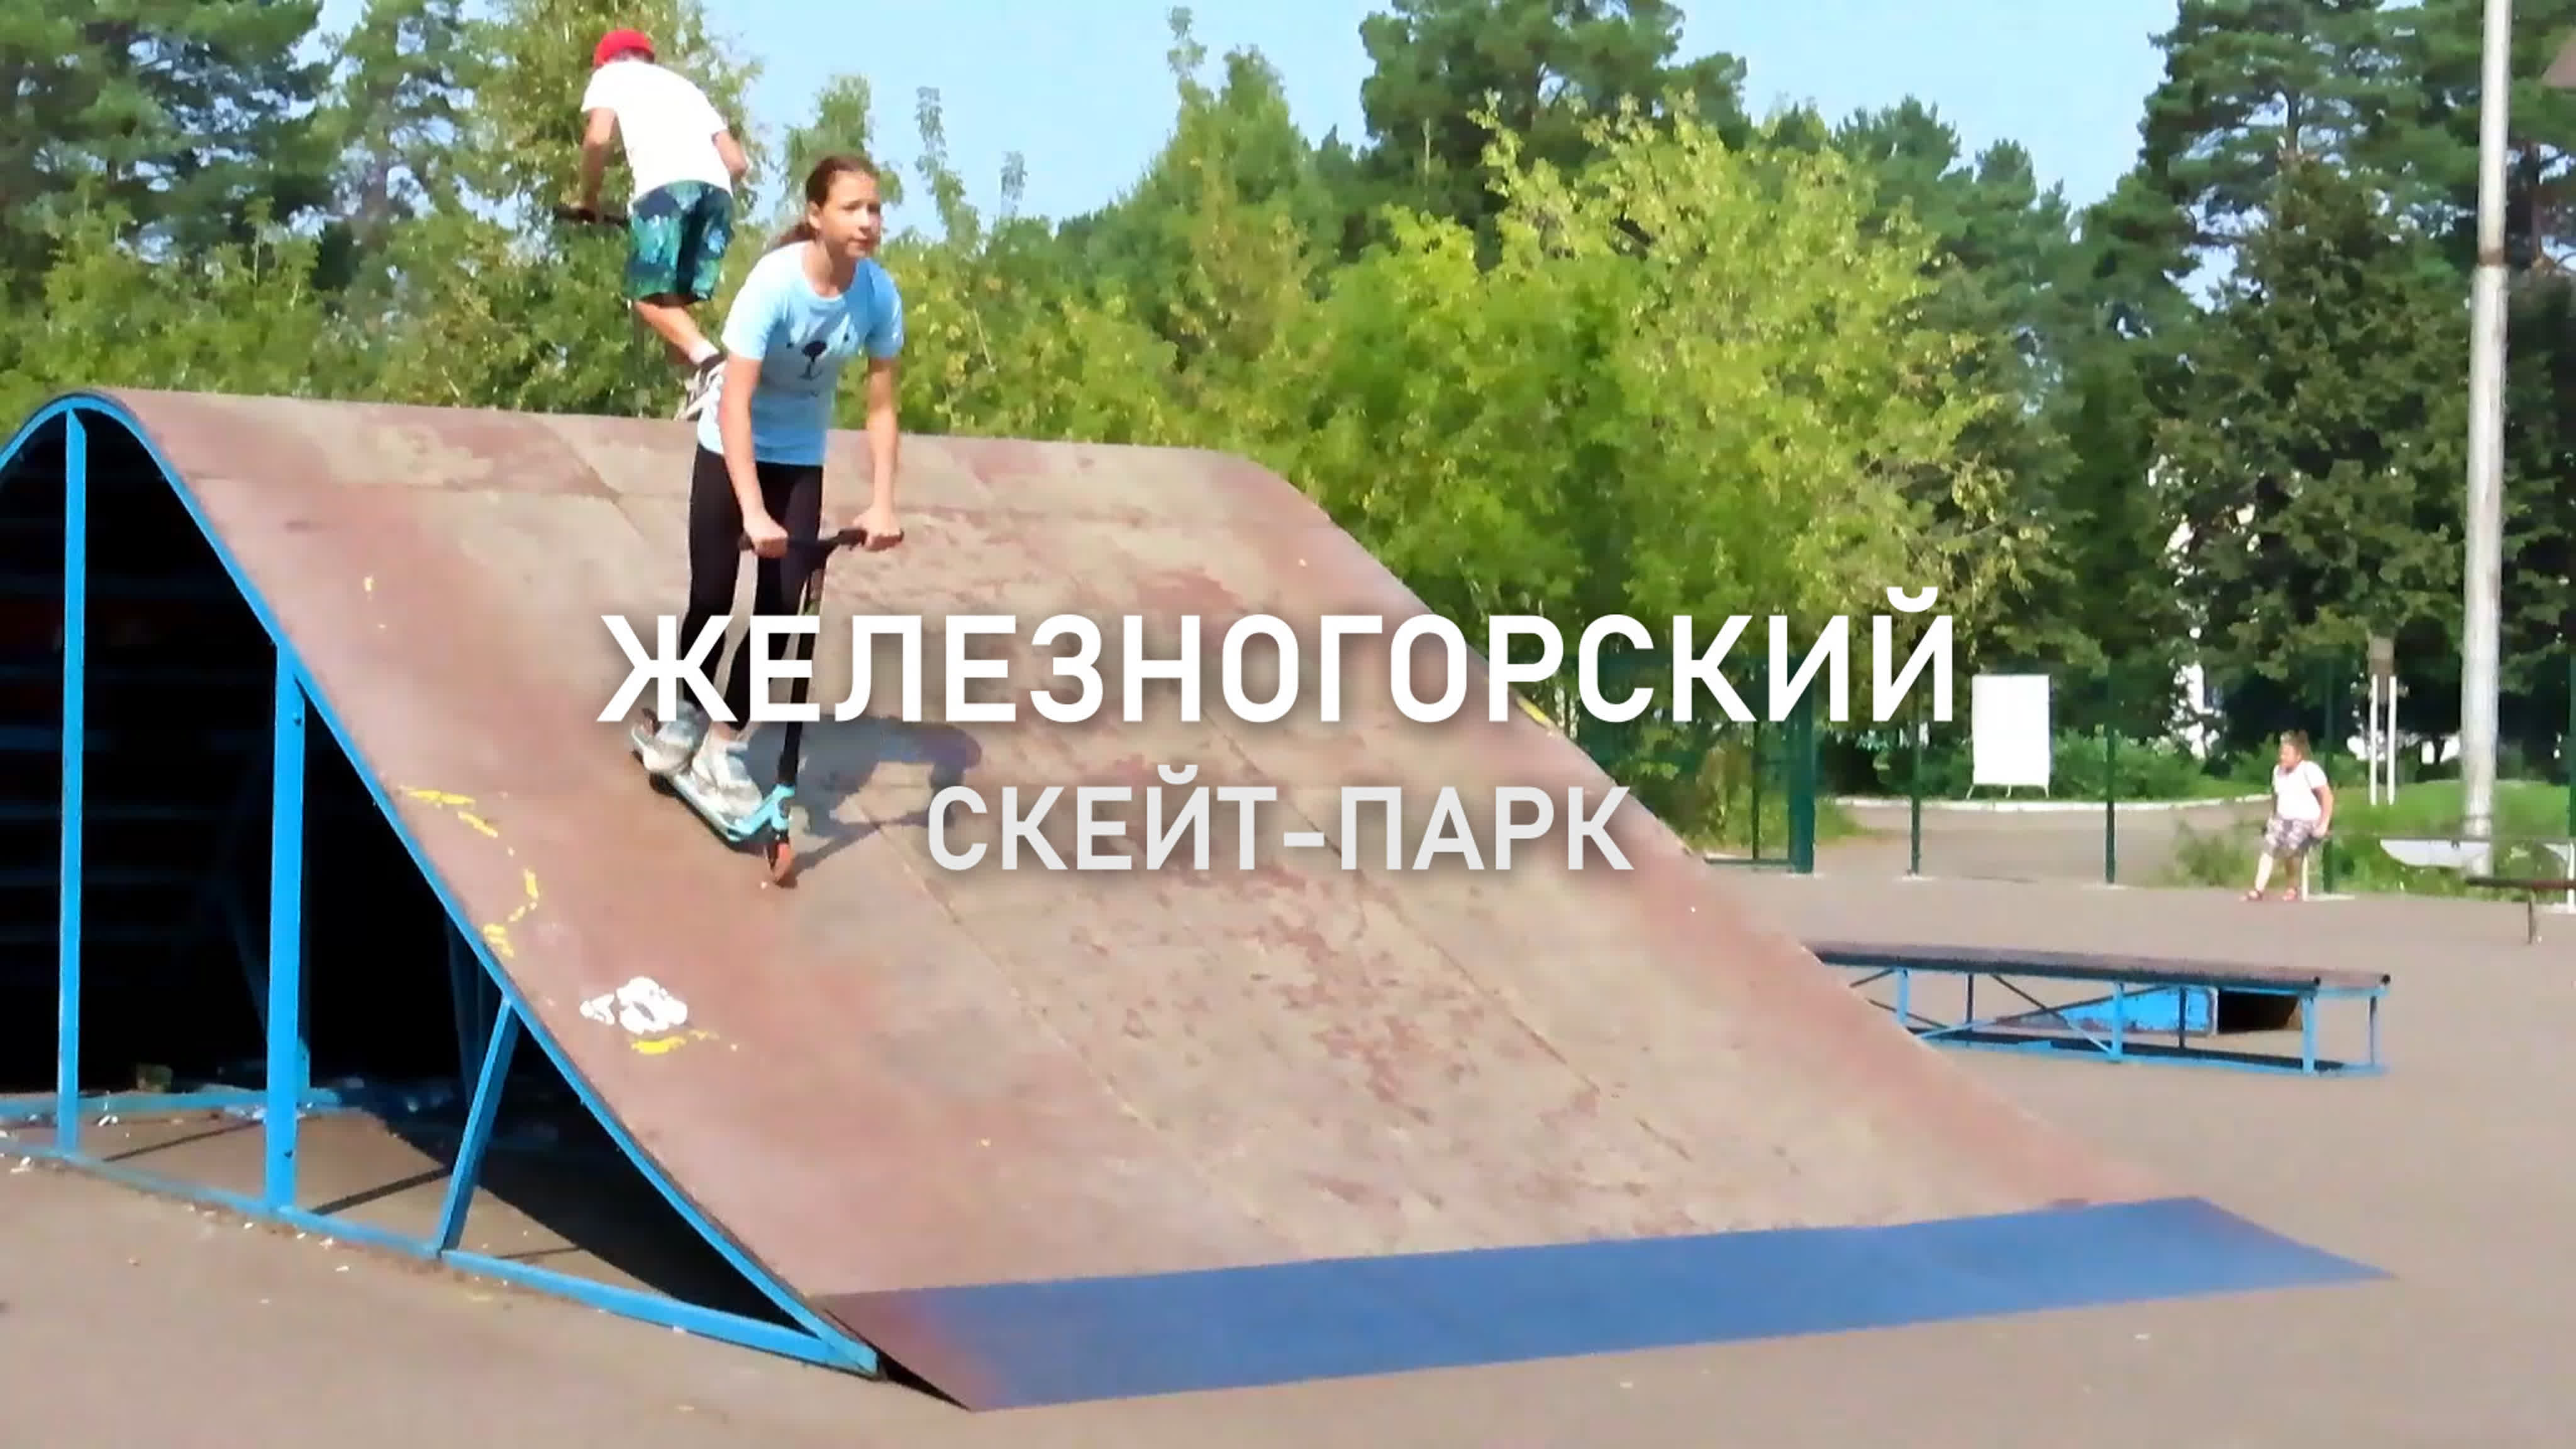 Скейт парк Железногорск Курская область.